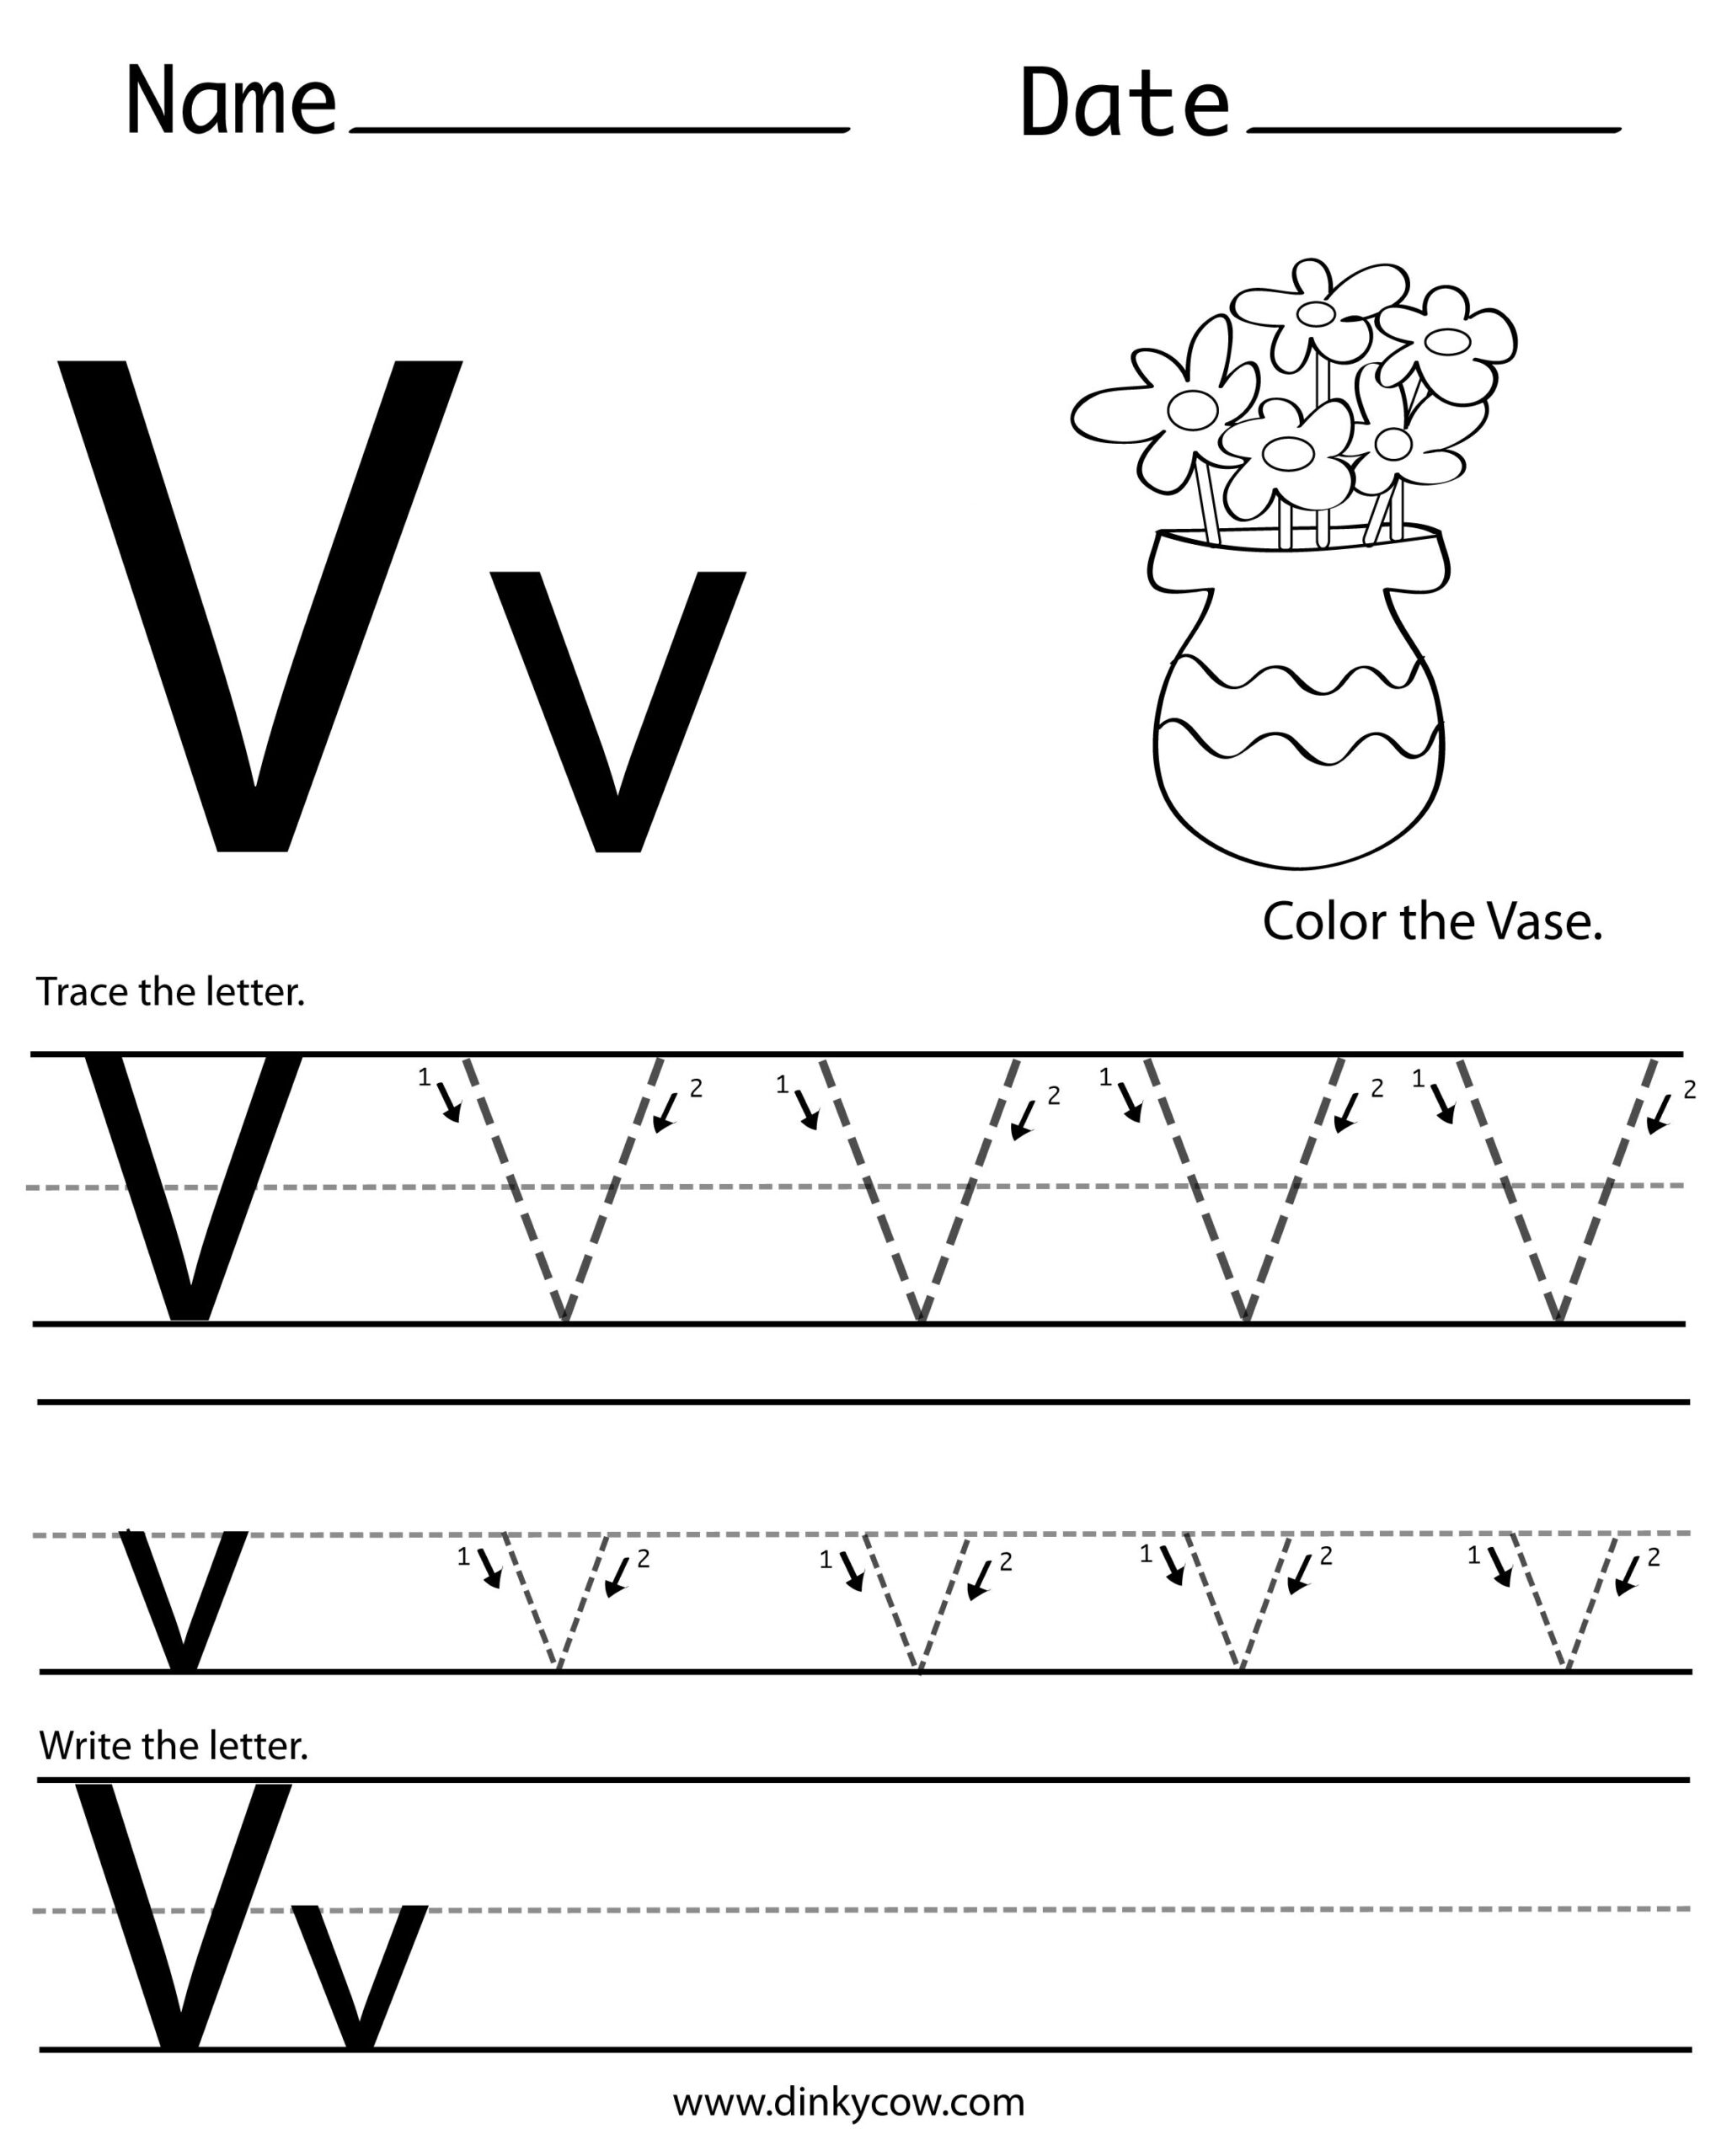 printable letter v worksheets for English for kids step by step: letter tracing worksheets (letters u